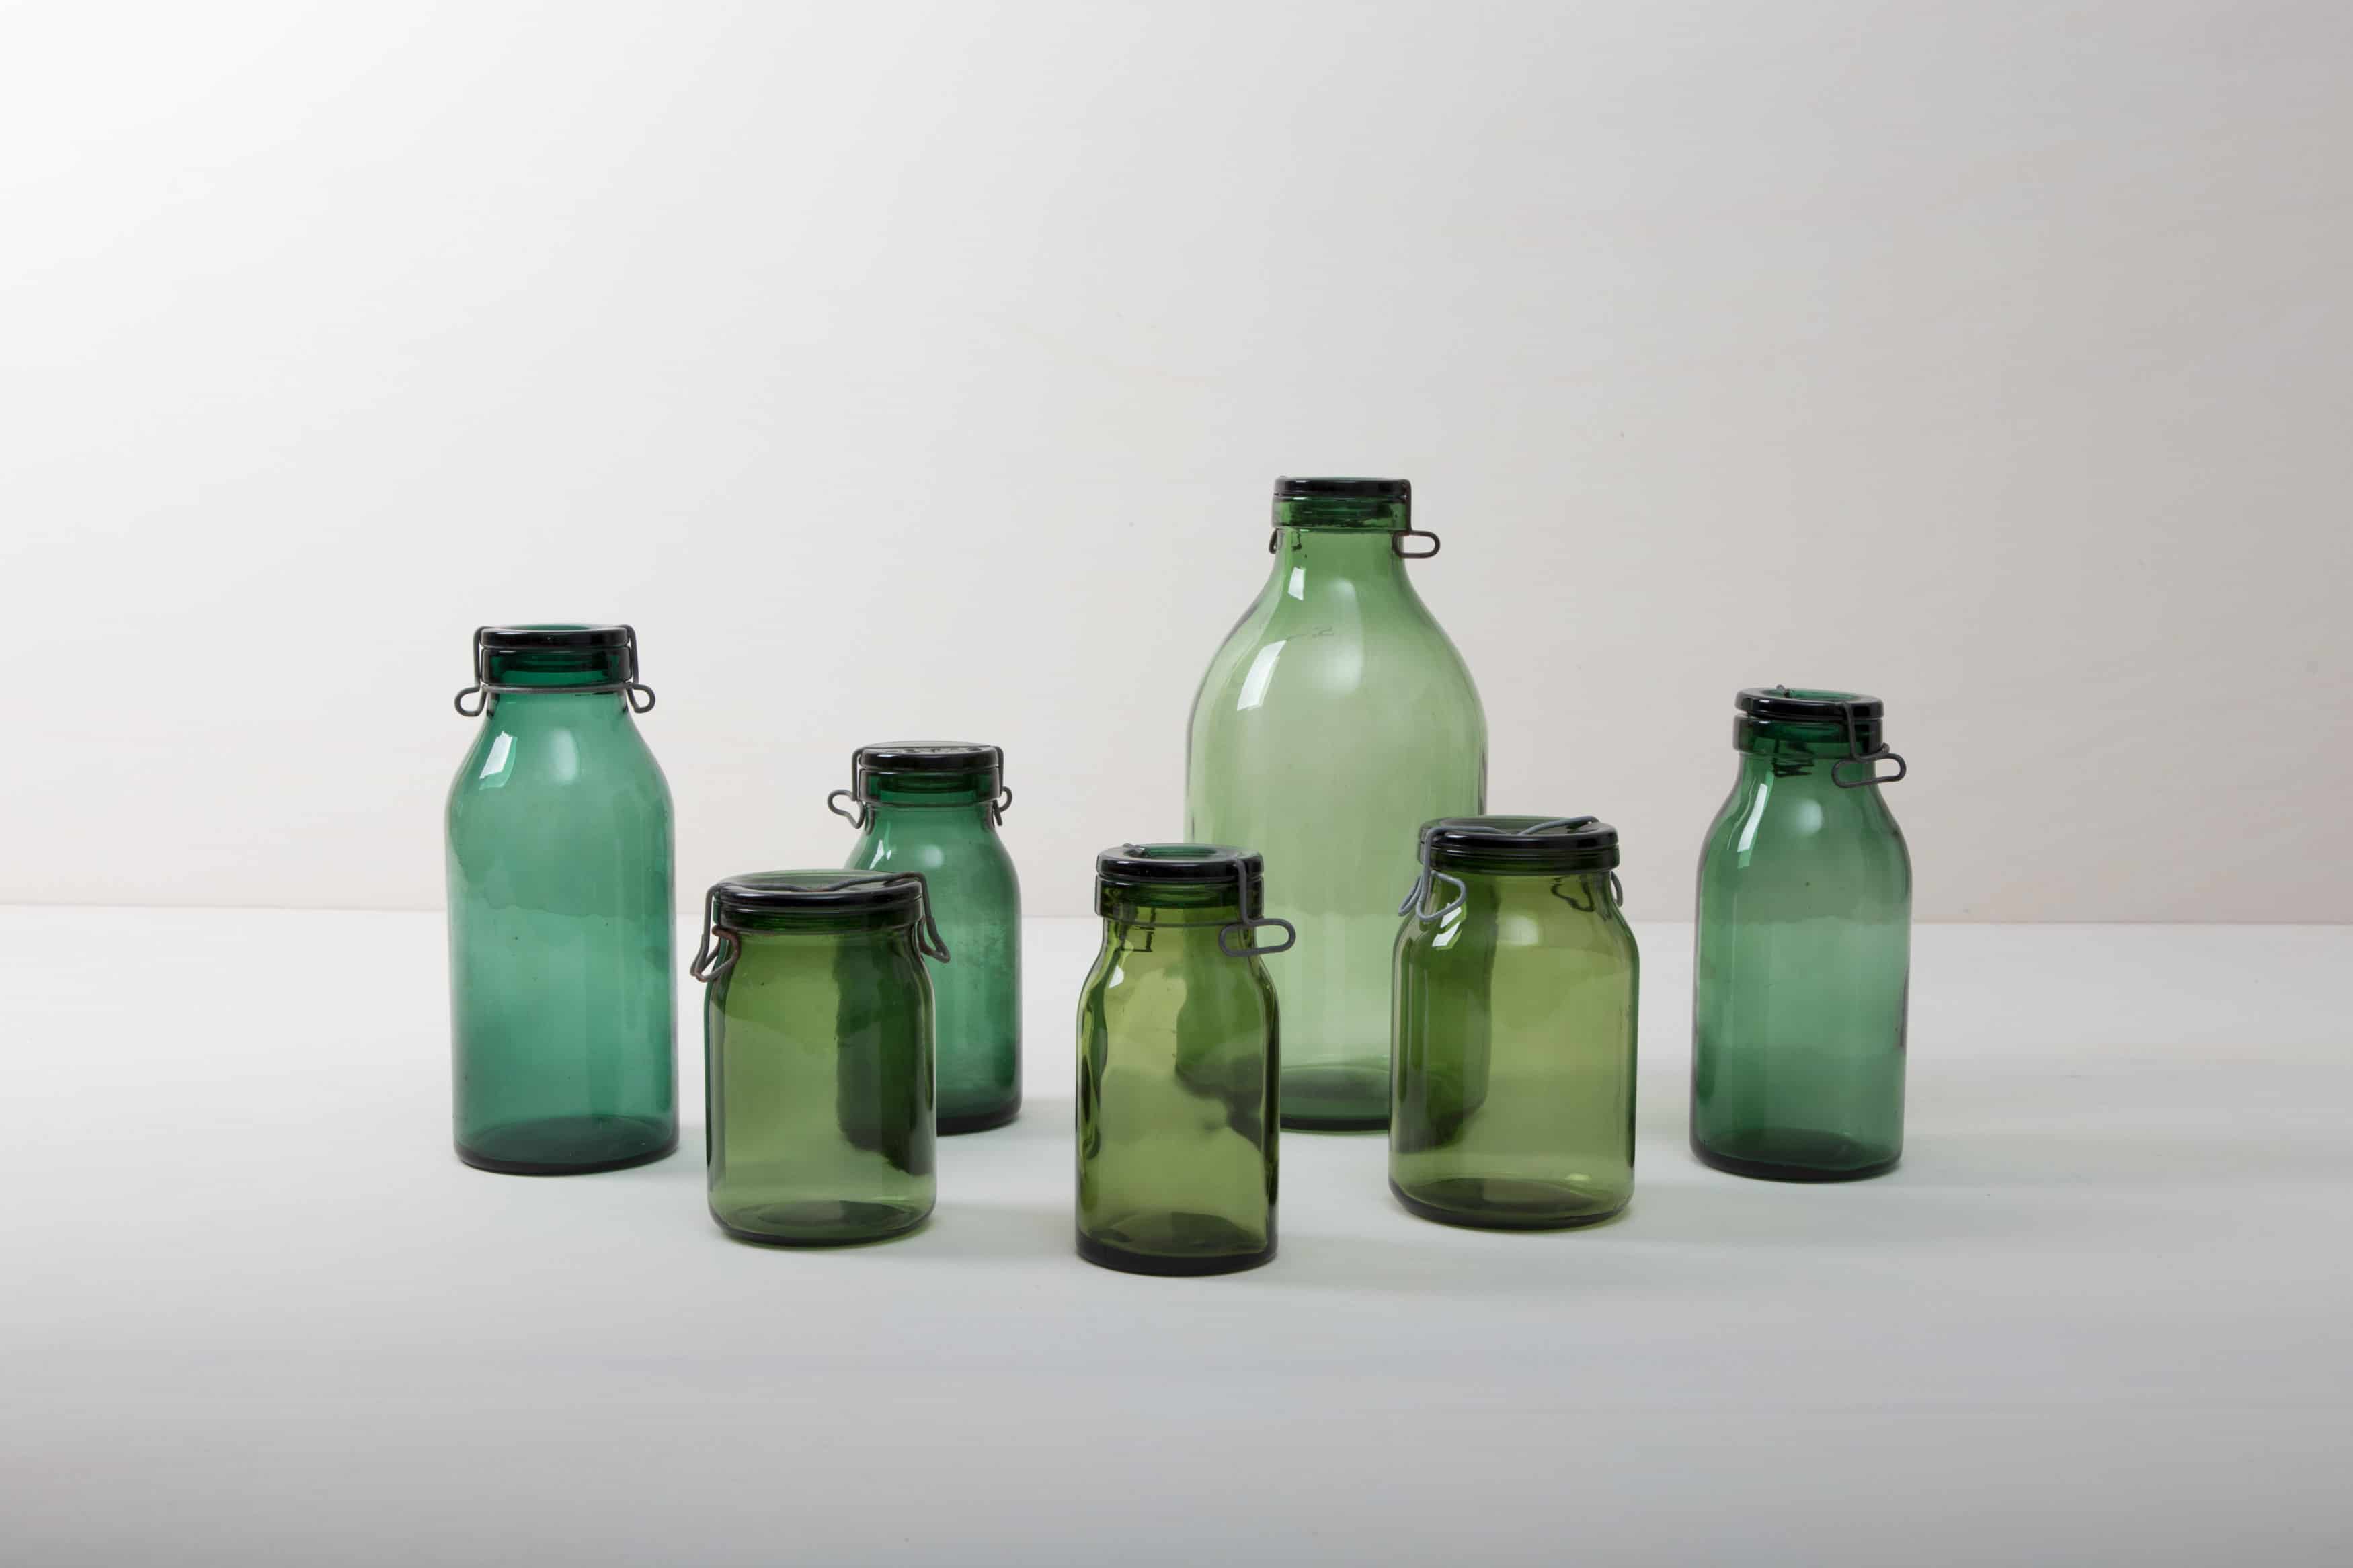 grüne Gläser und Vasen im Vintagestil mieten. Bülacher Einmachgläser